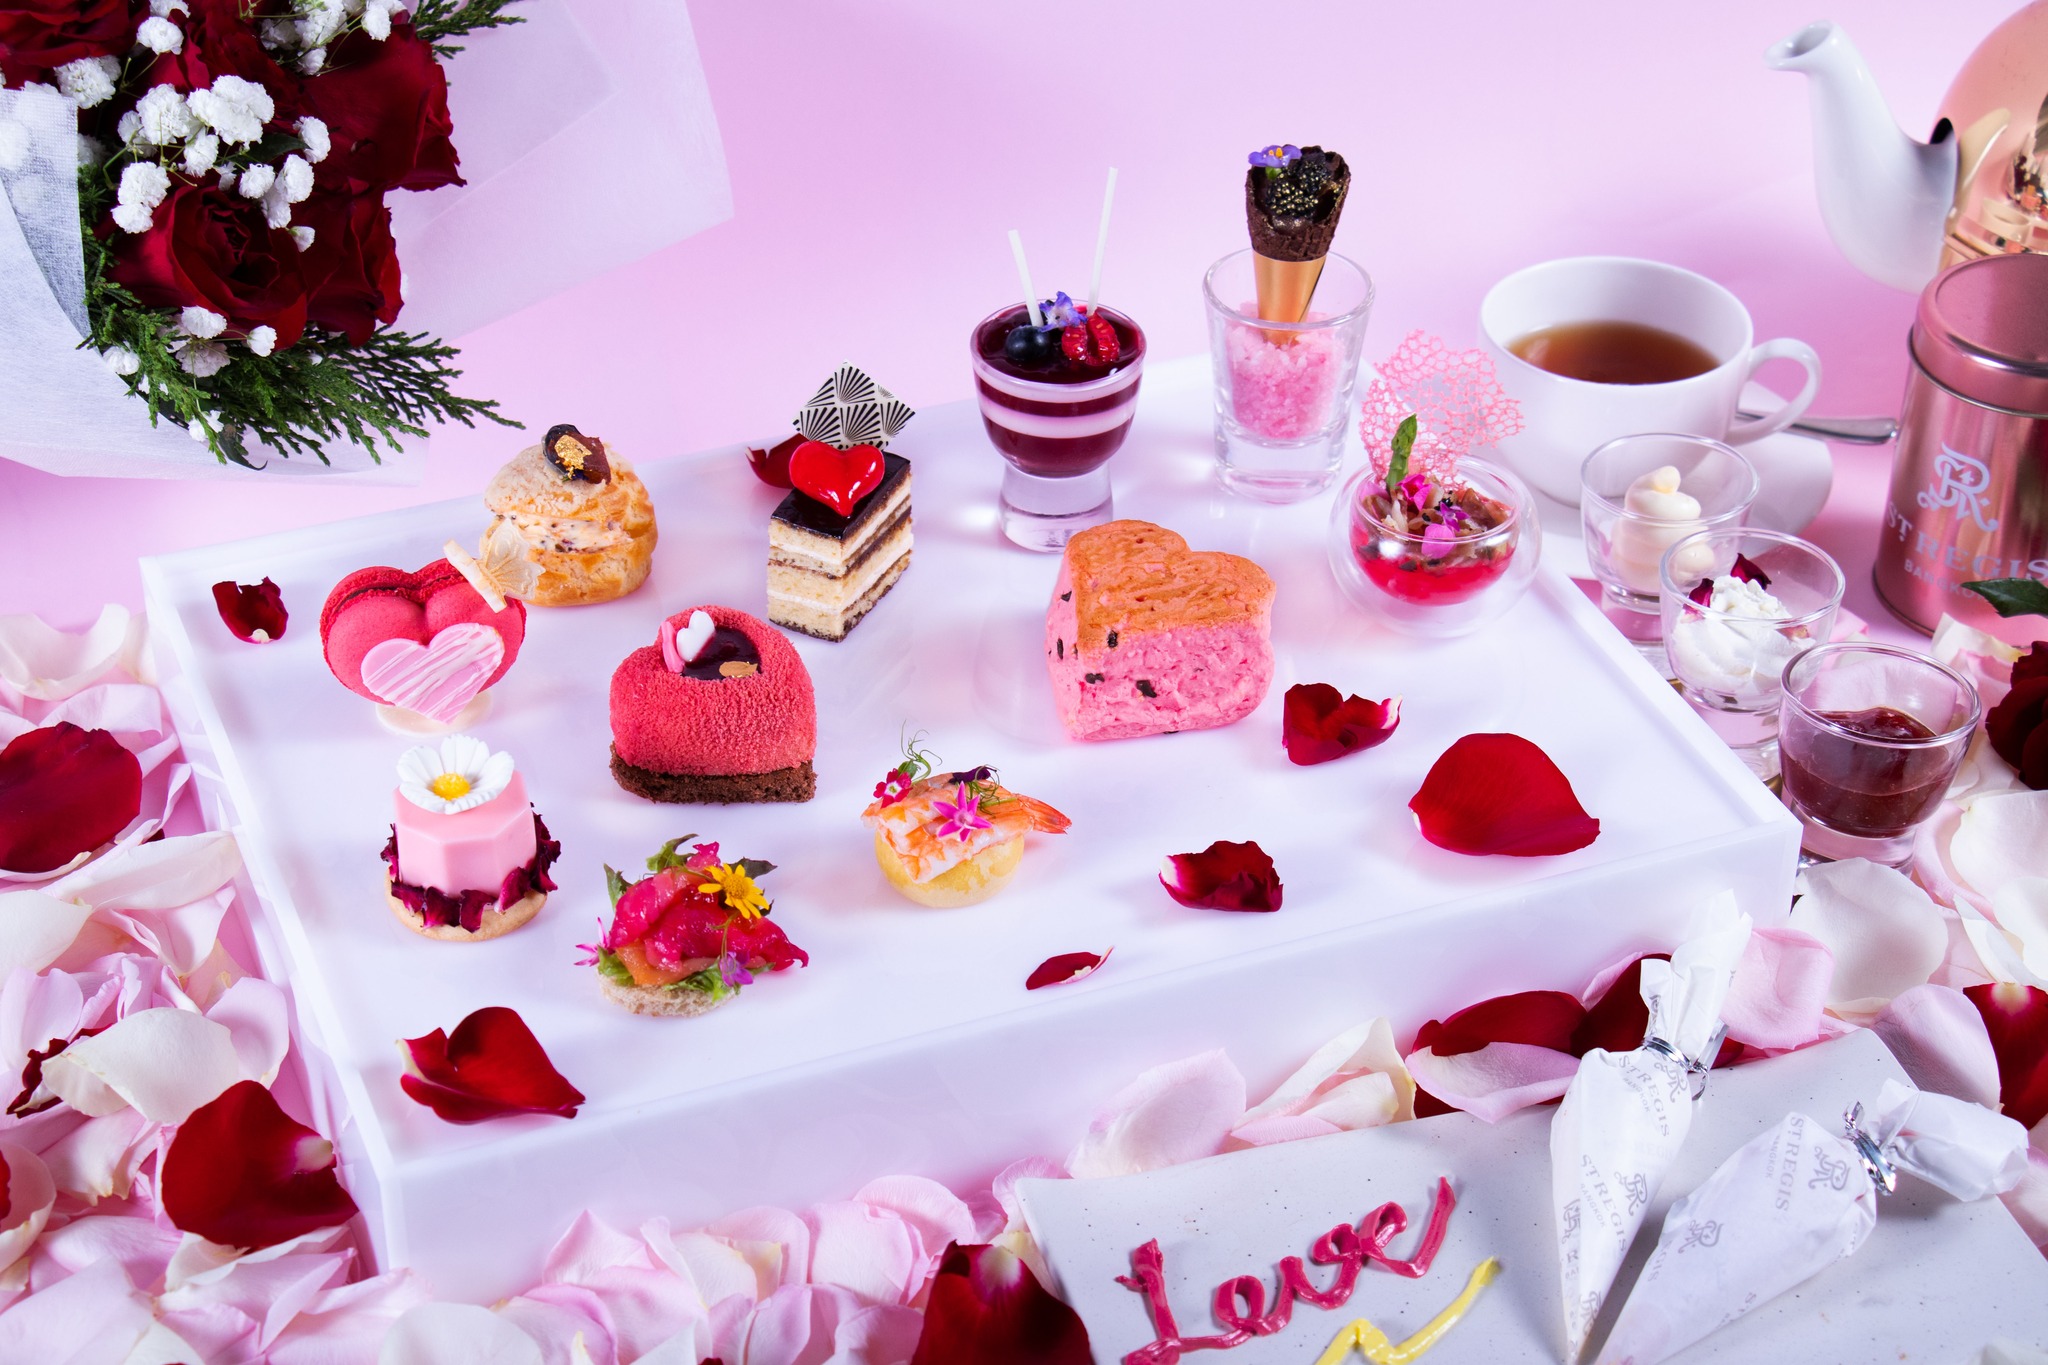 พบกับชุดน้ำชายามบ่าย ธีมใหม่ “Palette of Love Afternoon Tea ประจำเดือนแห่งความรัก   เดอะ เซนต์ รีจิส กรุงเทพฯ